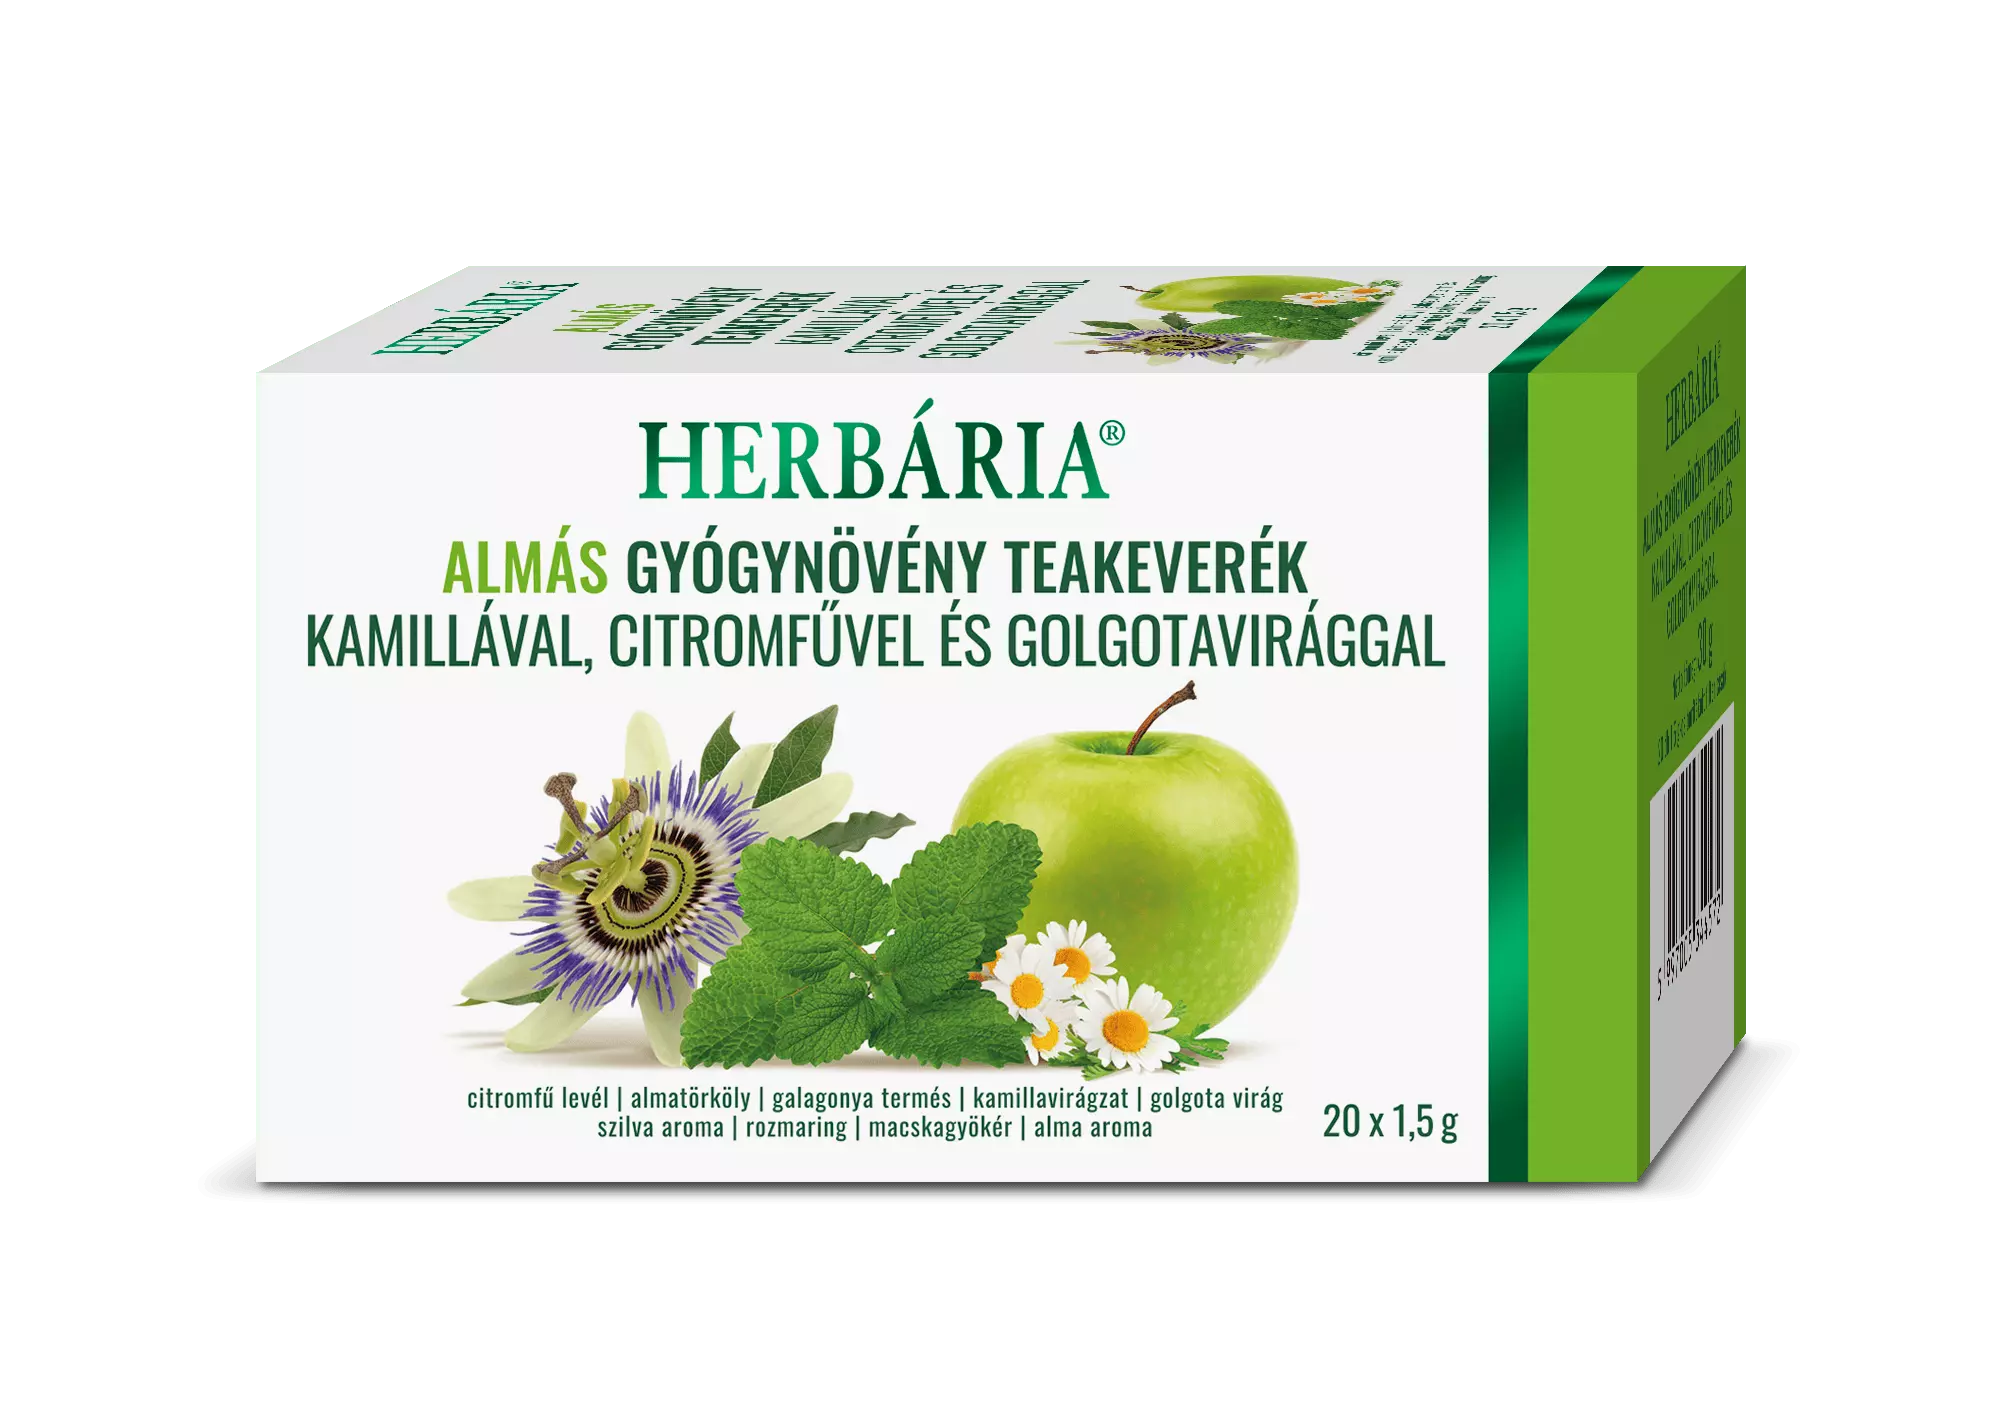 Herbária Almás gyógynövény teakeverék kamillával, citromfűvel és golgotavirággal